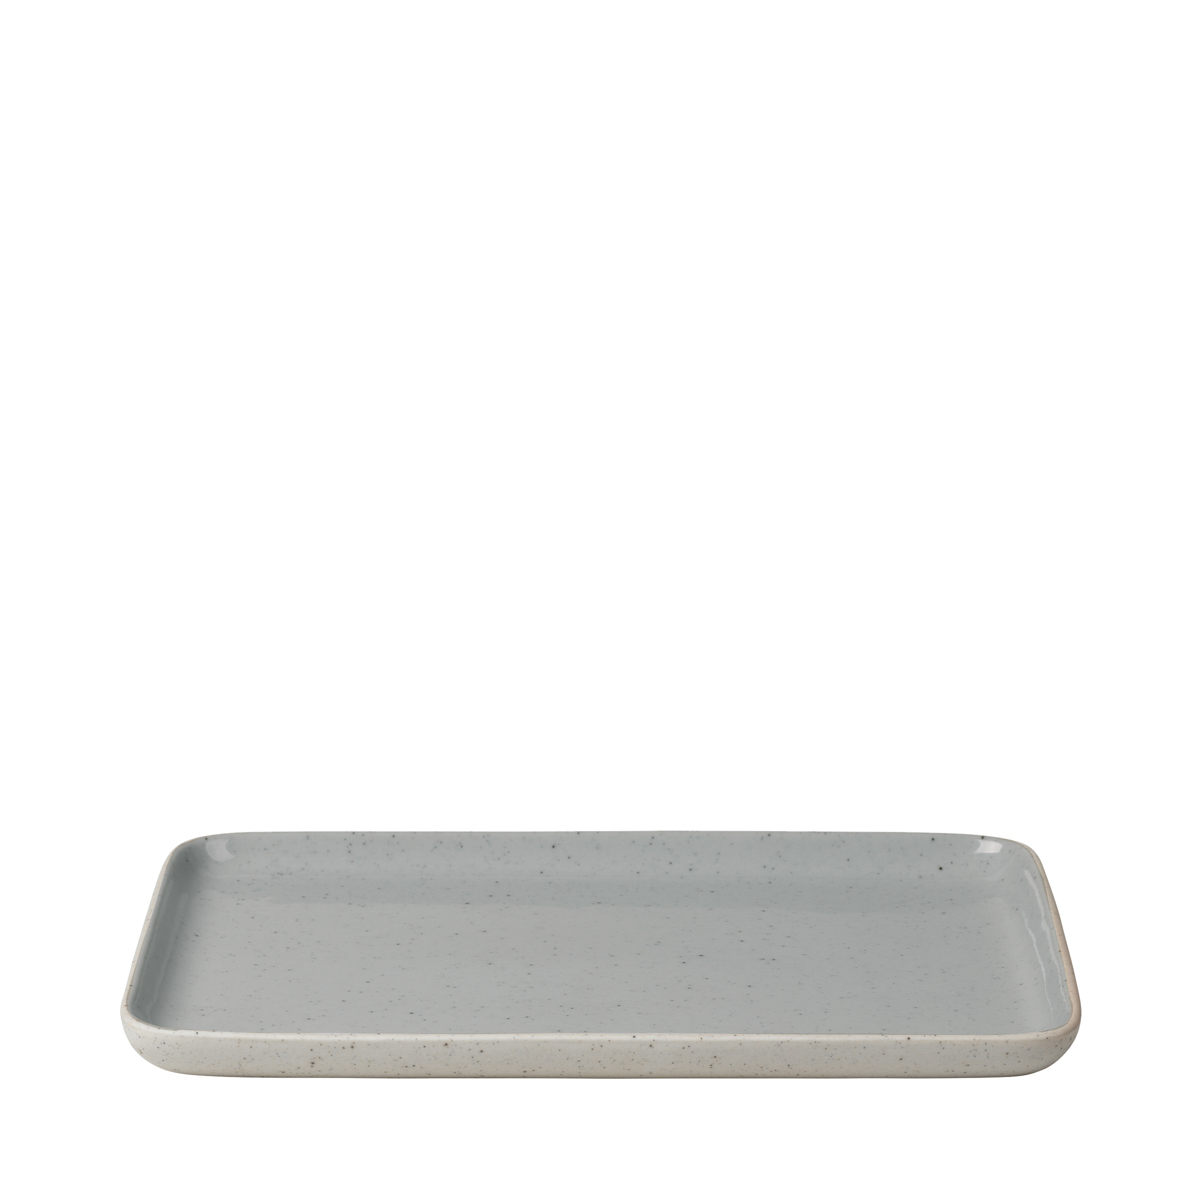 Snack Teller -SABLO- Stone Size L. Material: Keramik. Von Blomus.